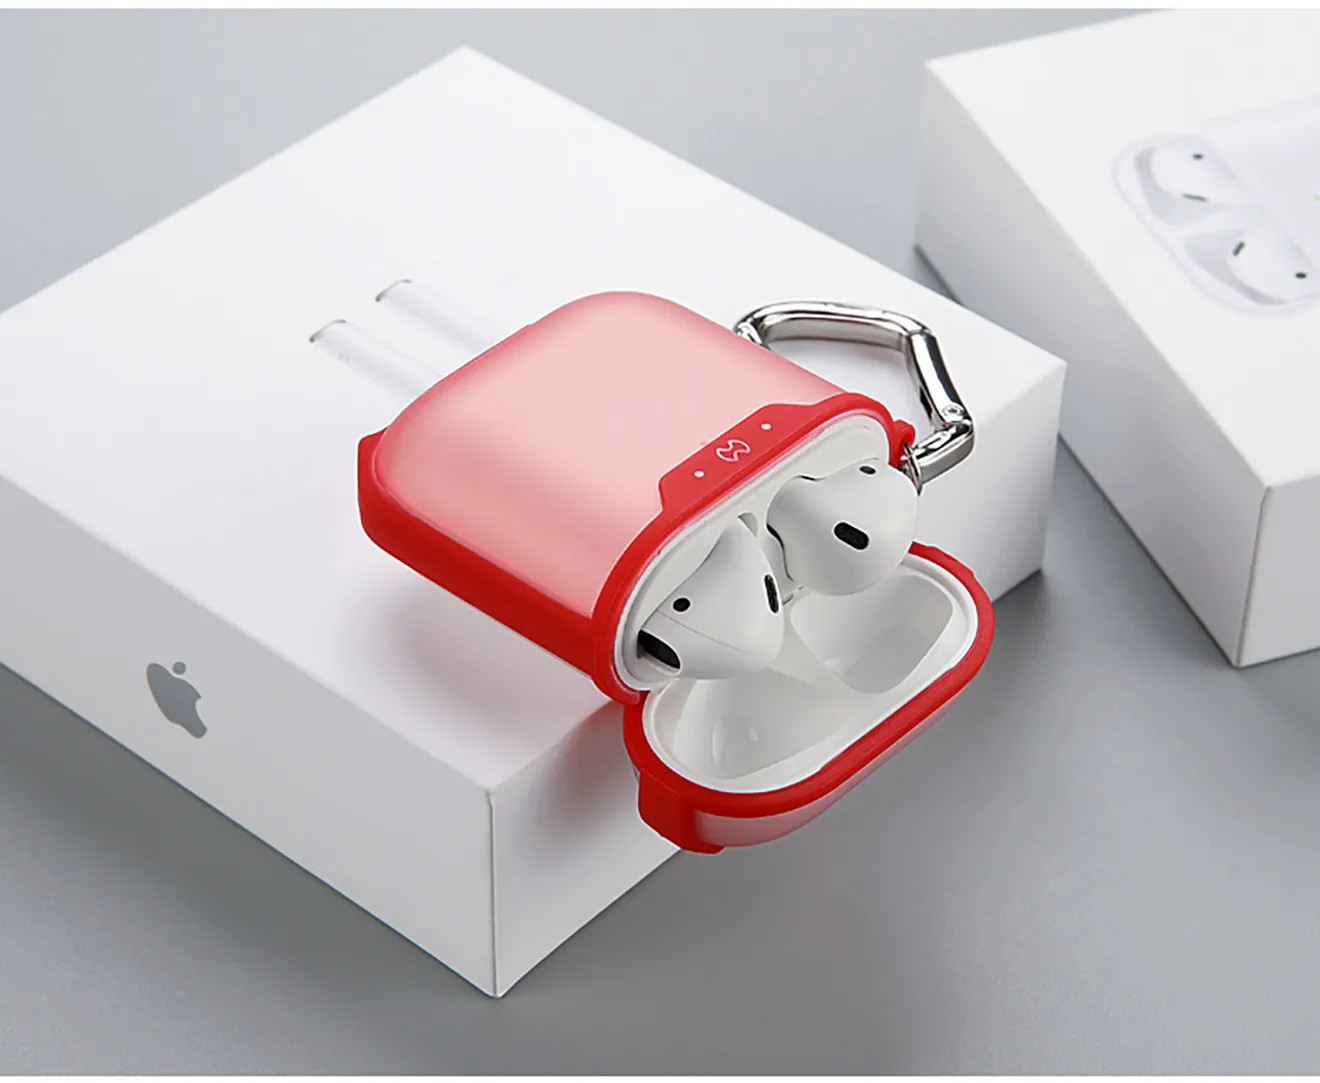 Bao case silicon chống sốc siêu mỏng cho tai nghe Apple Airpods 1 / 2 hiệu XUNDD Drop Resistant (Thiết kế siêu mỏng kiểu dáng viền màu bảo vệ chắc chắn)